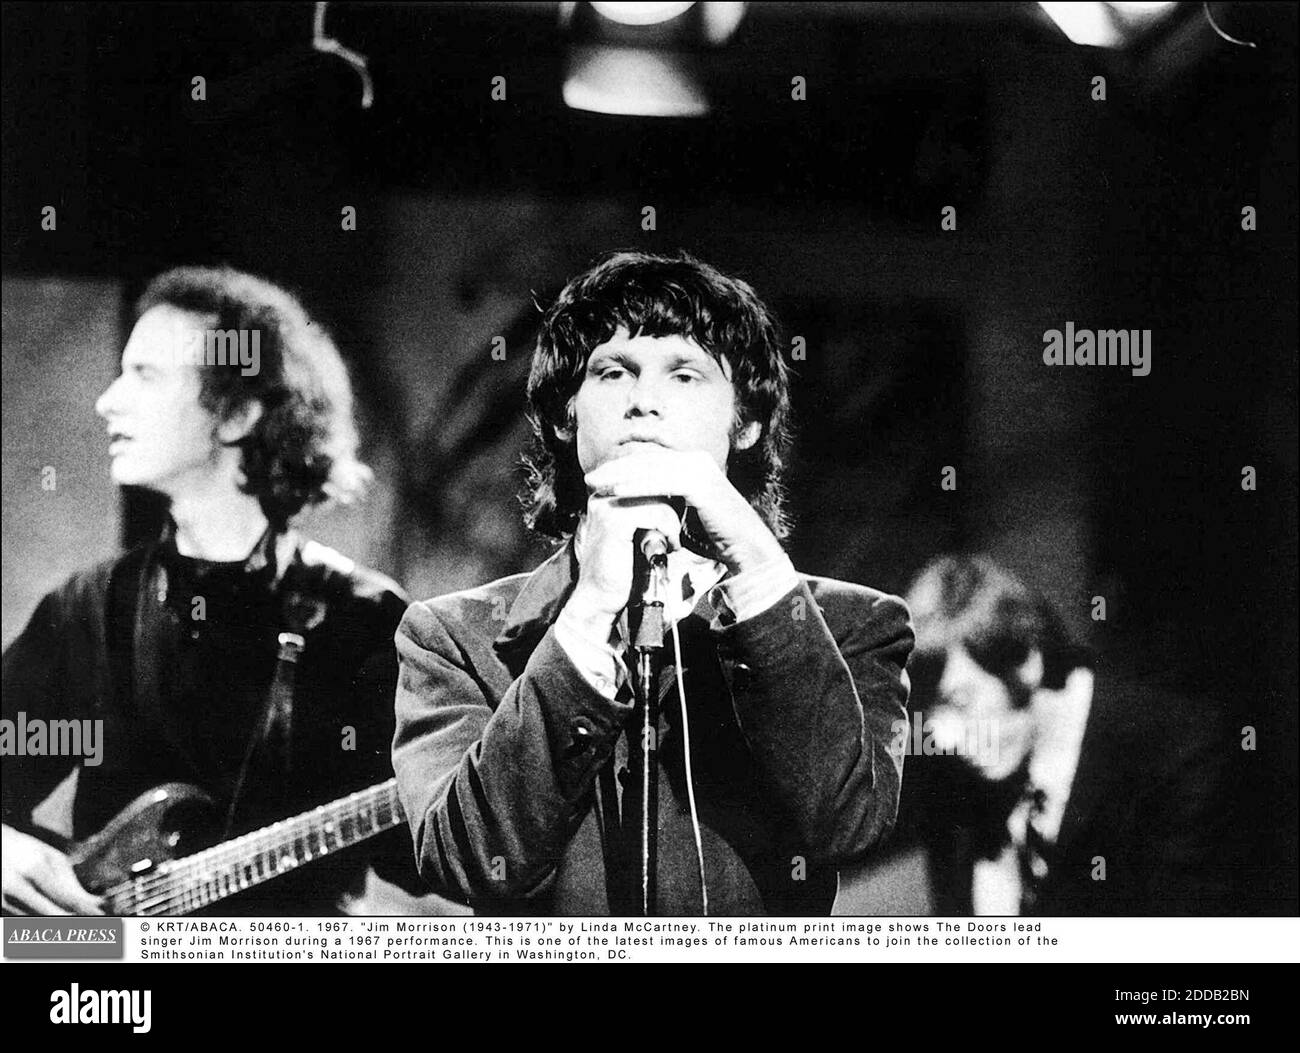 PAS DE FILM, PAS DE VIDÉO, PAS DE TV, PAS DE DOCUMENTAIRE - © KRT/ABACA. 50460-1. 1967. Jim Morrison (1943-1971) par Linda McCartney. L'image imprimée en platine montre le chanteur de Doors Jim Morrison lors d'une représentation de 1967. C'est l'une des dernières images de célèbres Américains à rejoindre la collection des Smiths Banque D'Images